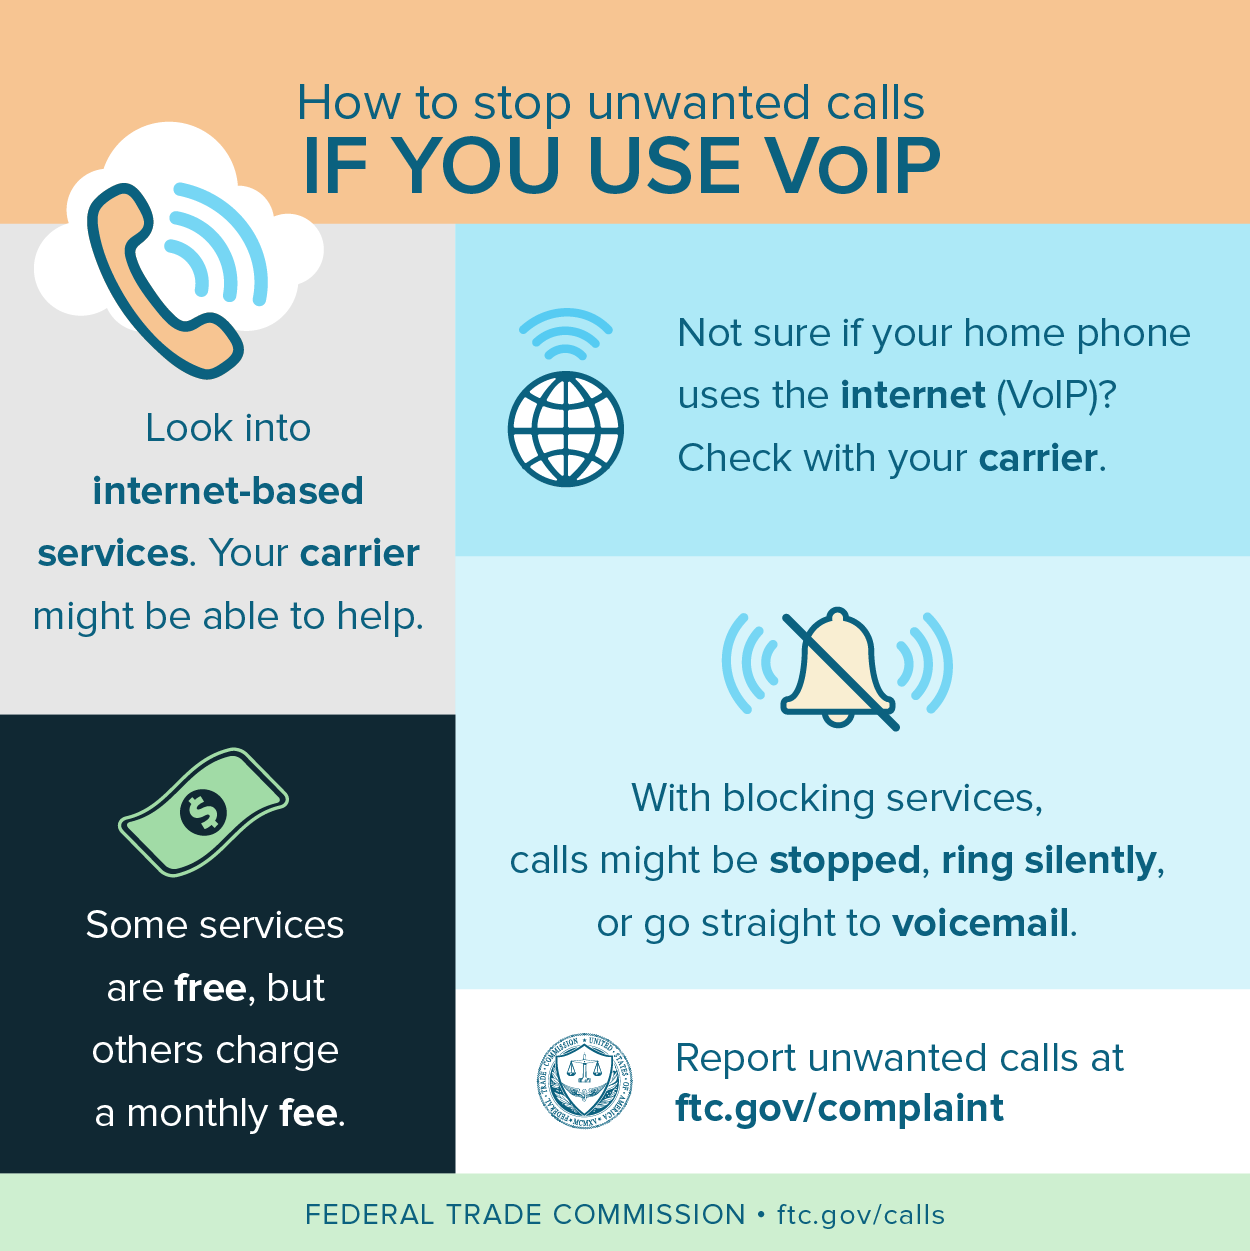 Grafiek over hoe u ongewenste oproepen kunt blokkeren als u VoIP gebruikt